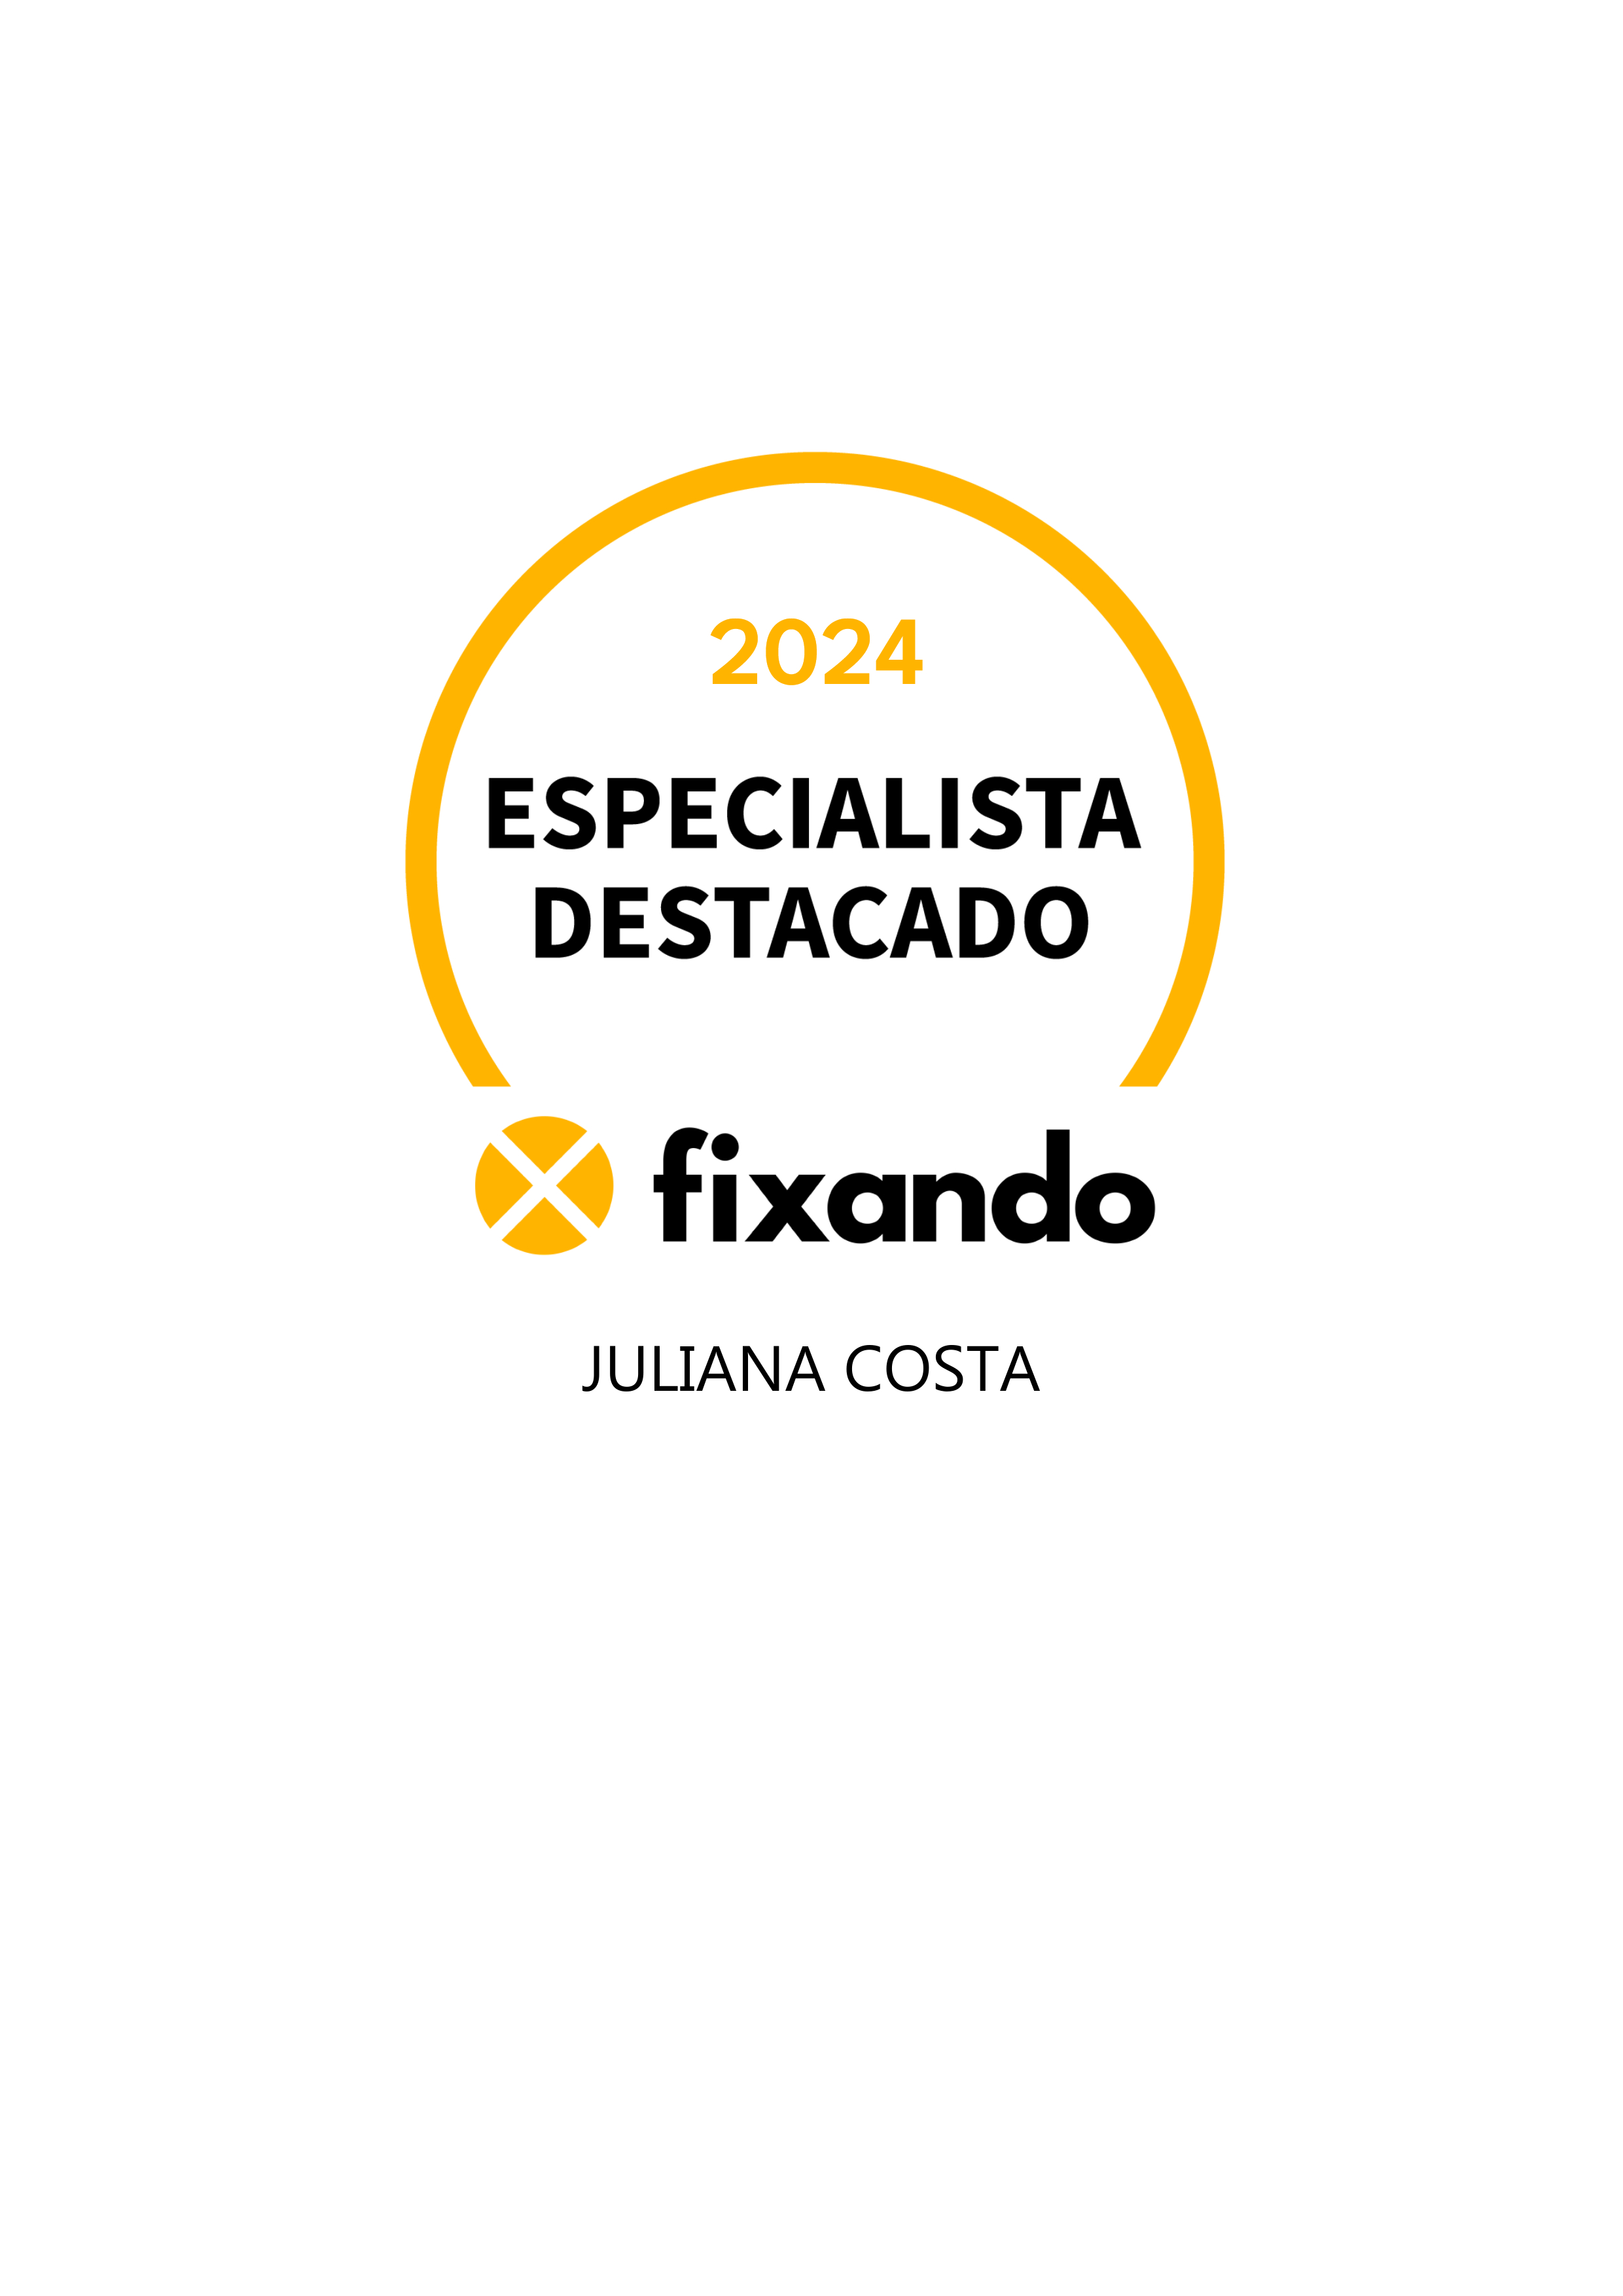 Juliana Costa - Vila Nova de Famalicão - Consultoria de Marketing e Digital